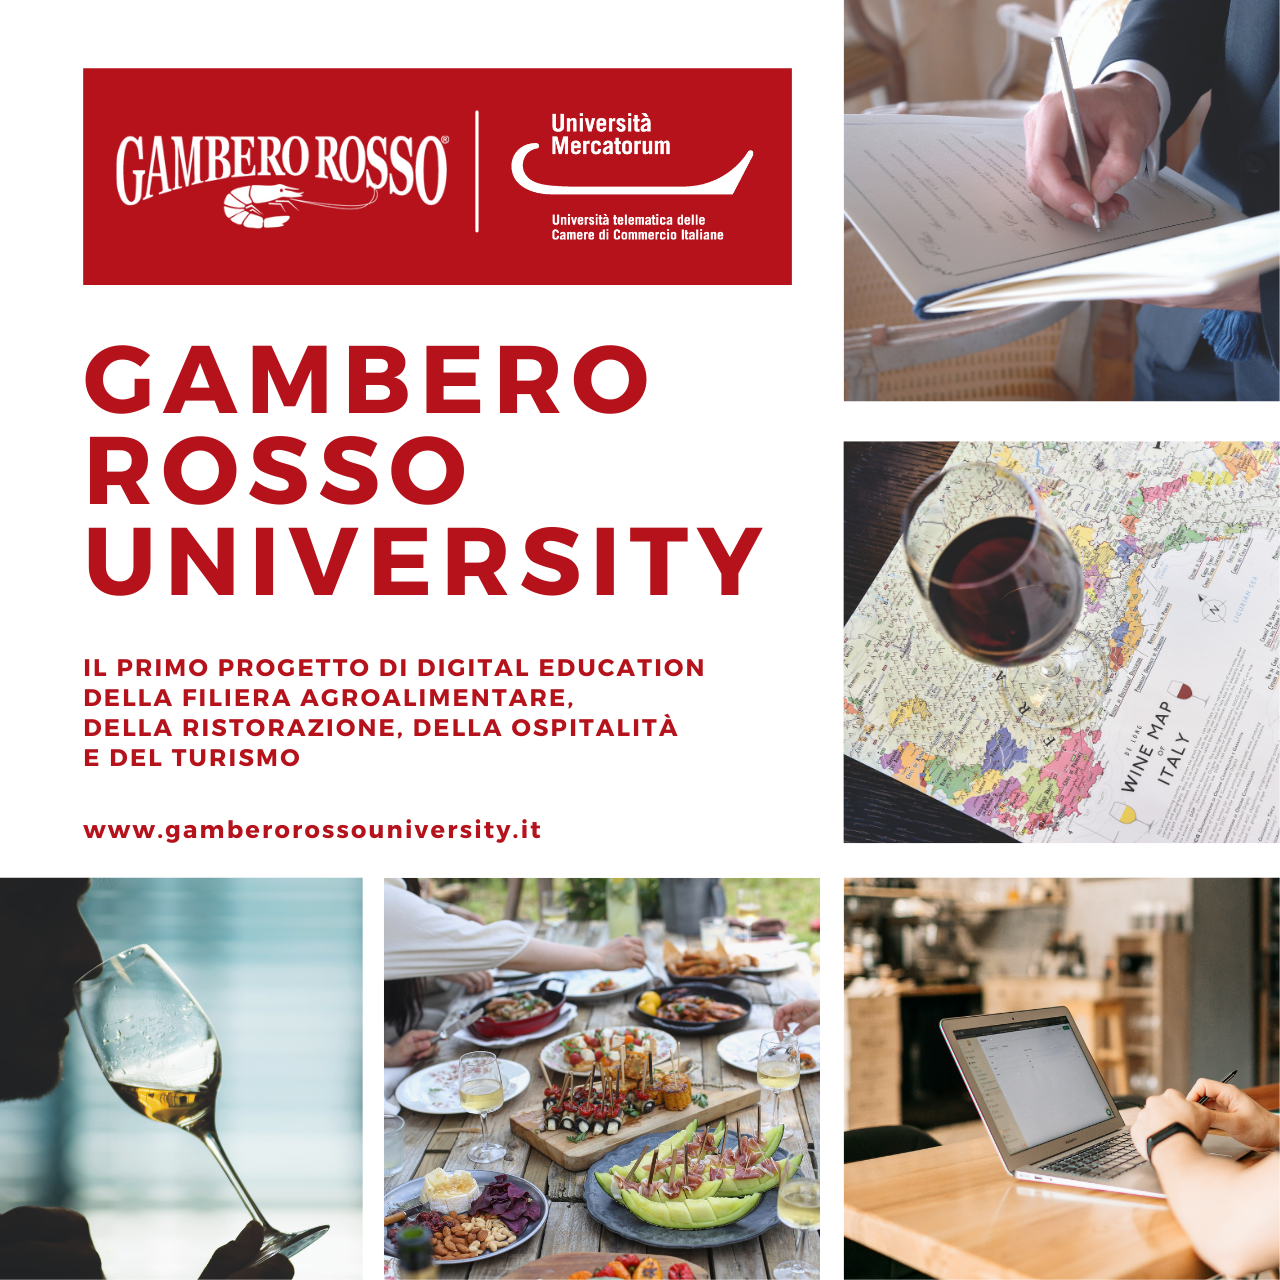 E’ nata la Gambero Rosso University!